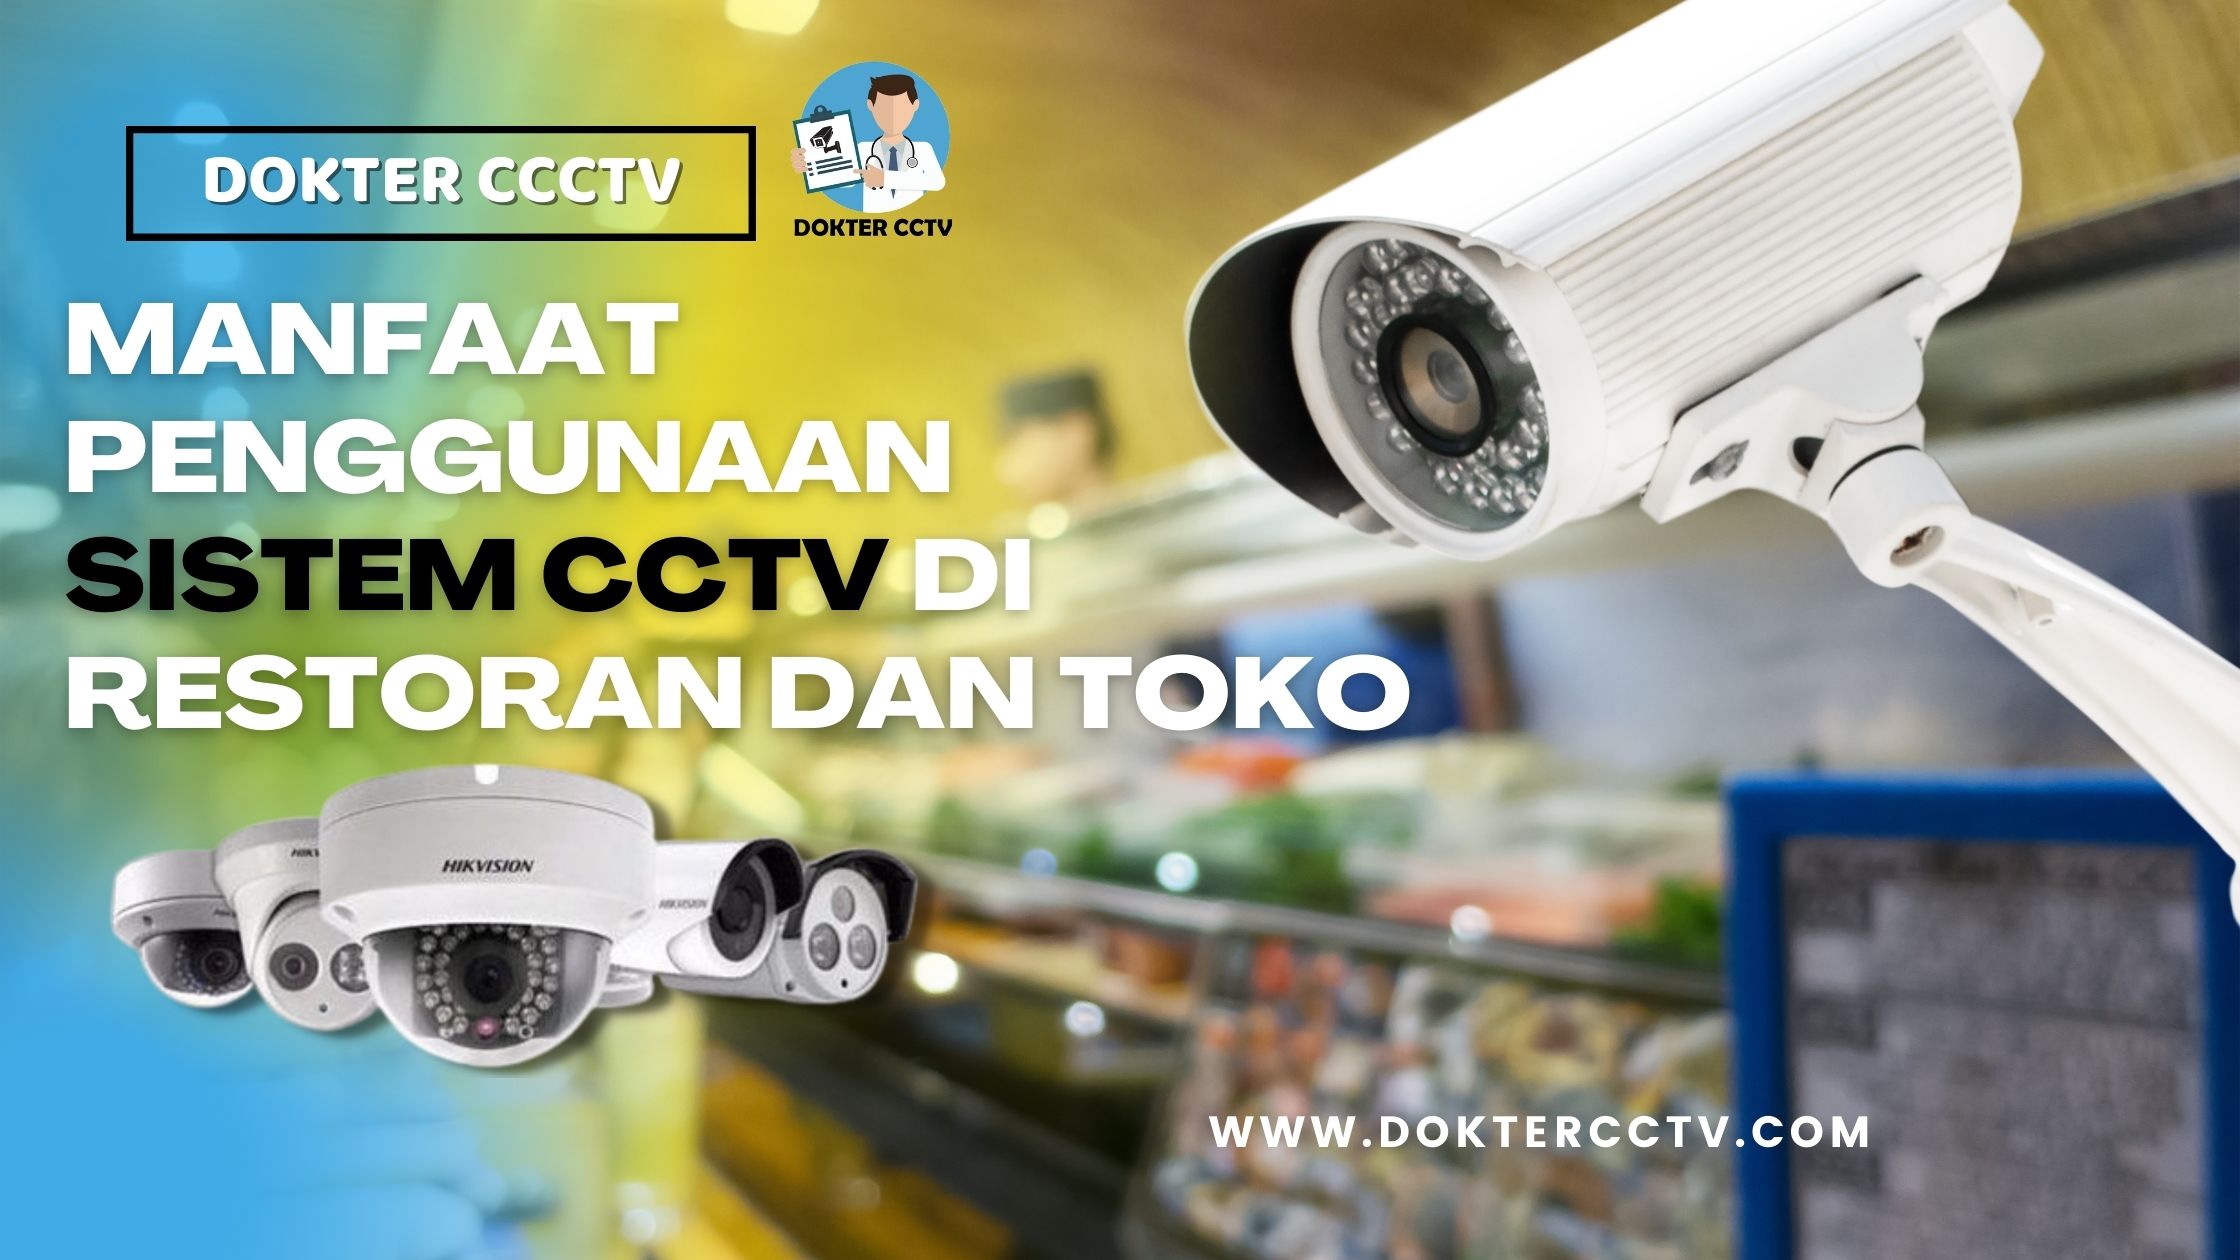 MANFAAT PENGGUNAAN SISTEM CCTV DI RESTORAN DAN TOKO